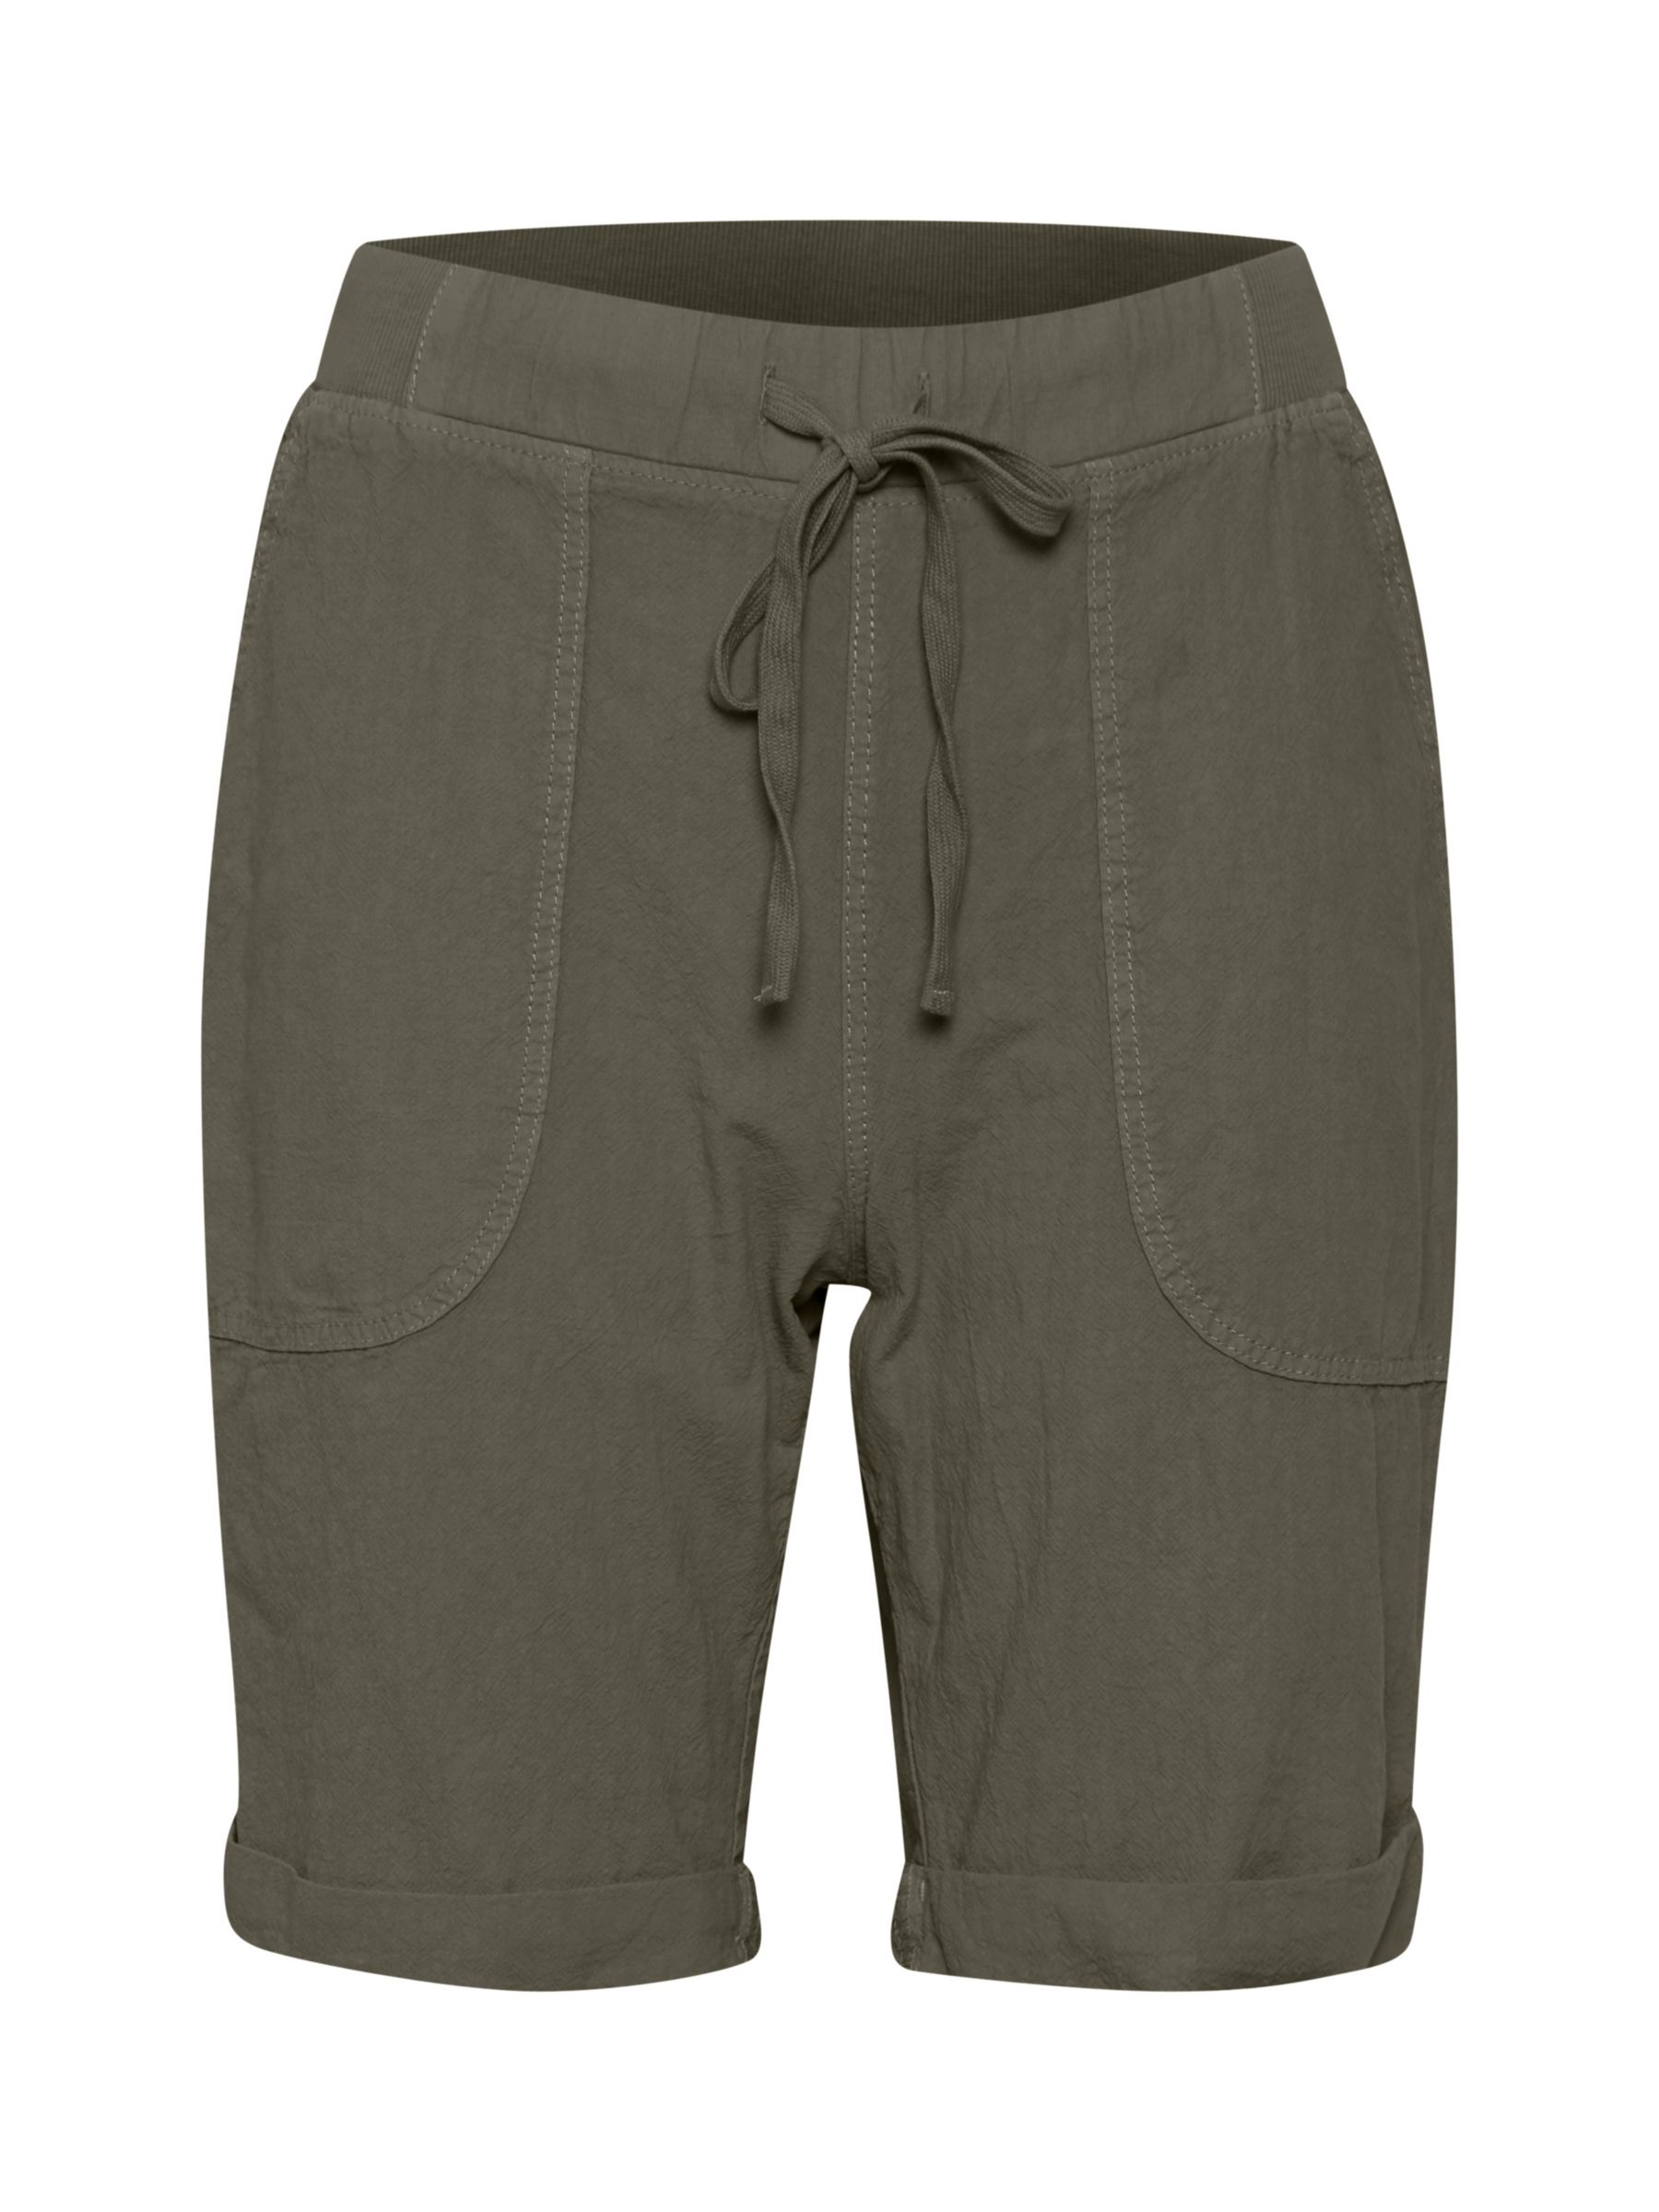 Buy KAFFE Naya Elasticated Shorts, Khaki Online at johnlewis.com